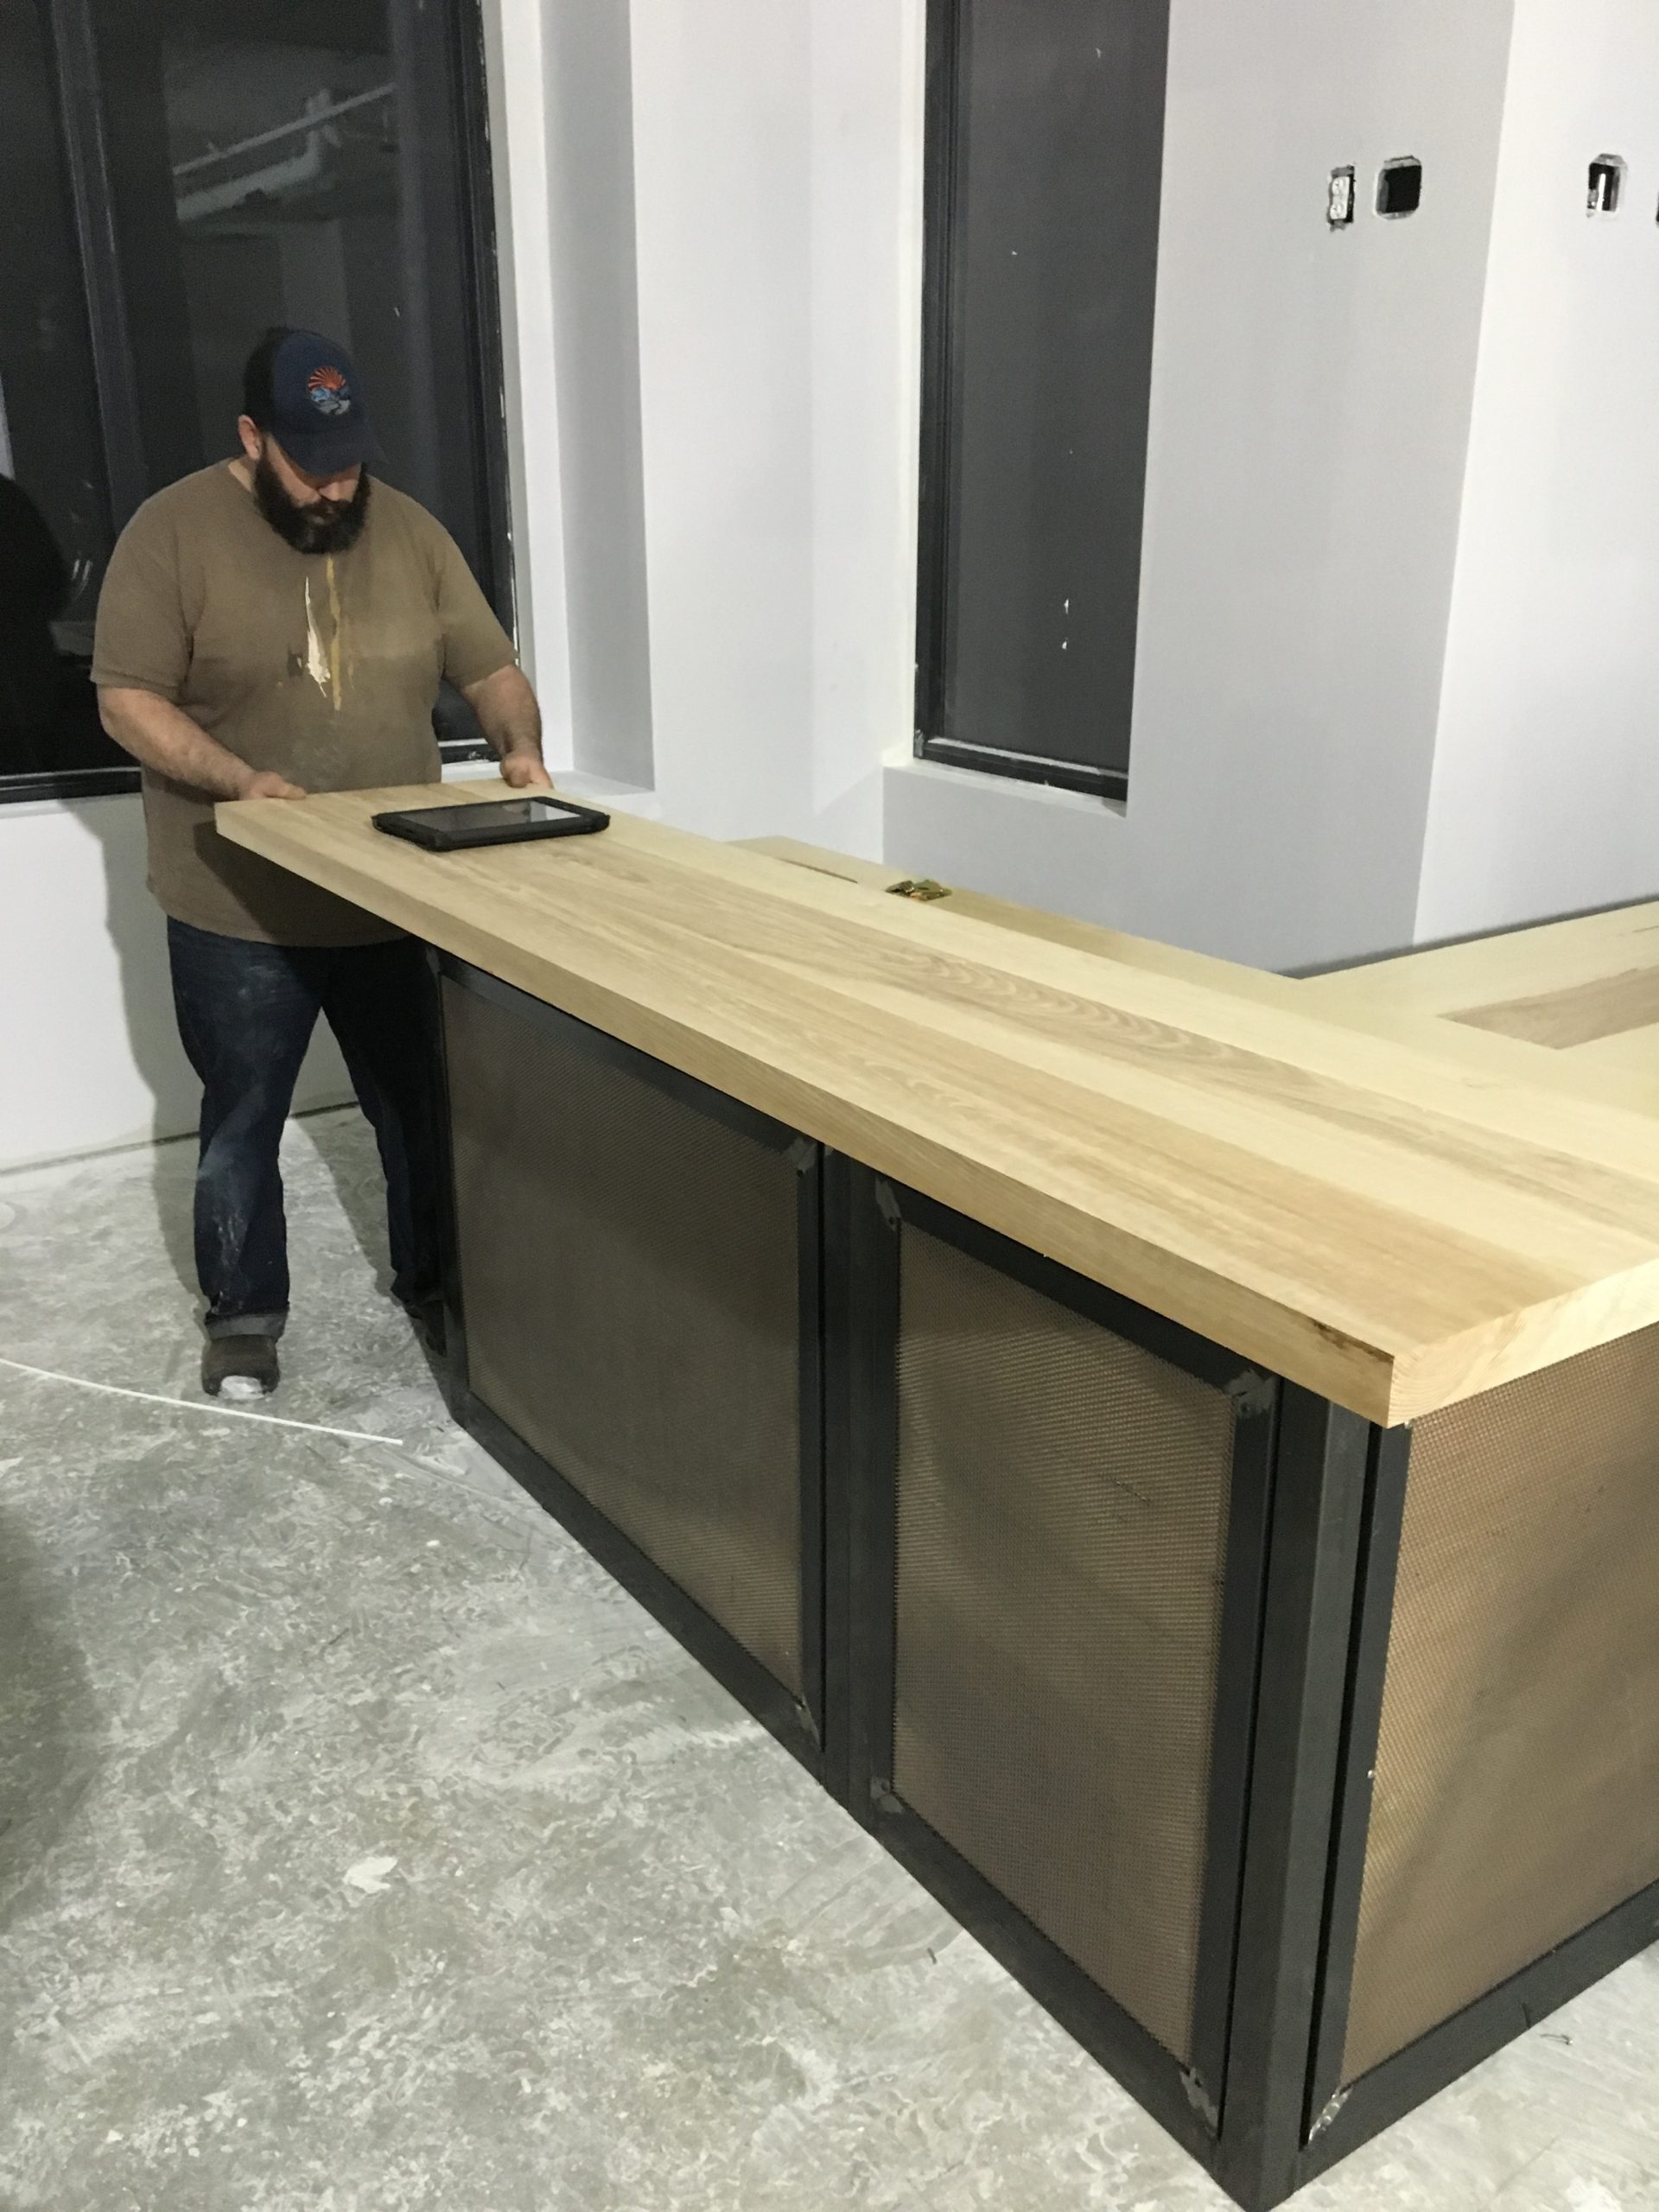 Building the custom bar!